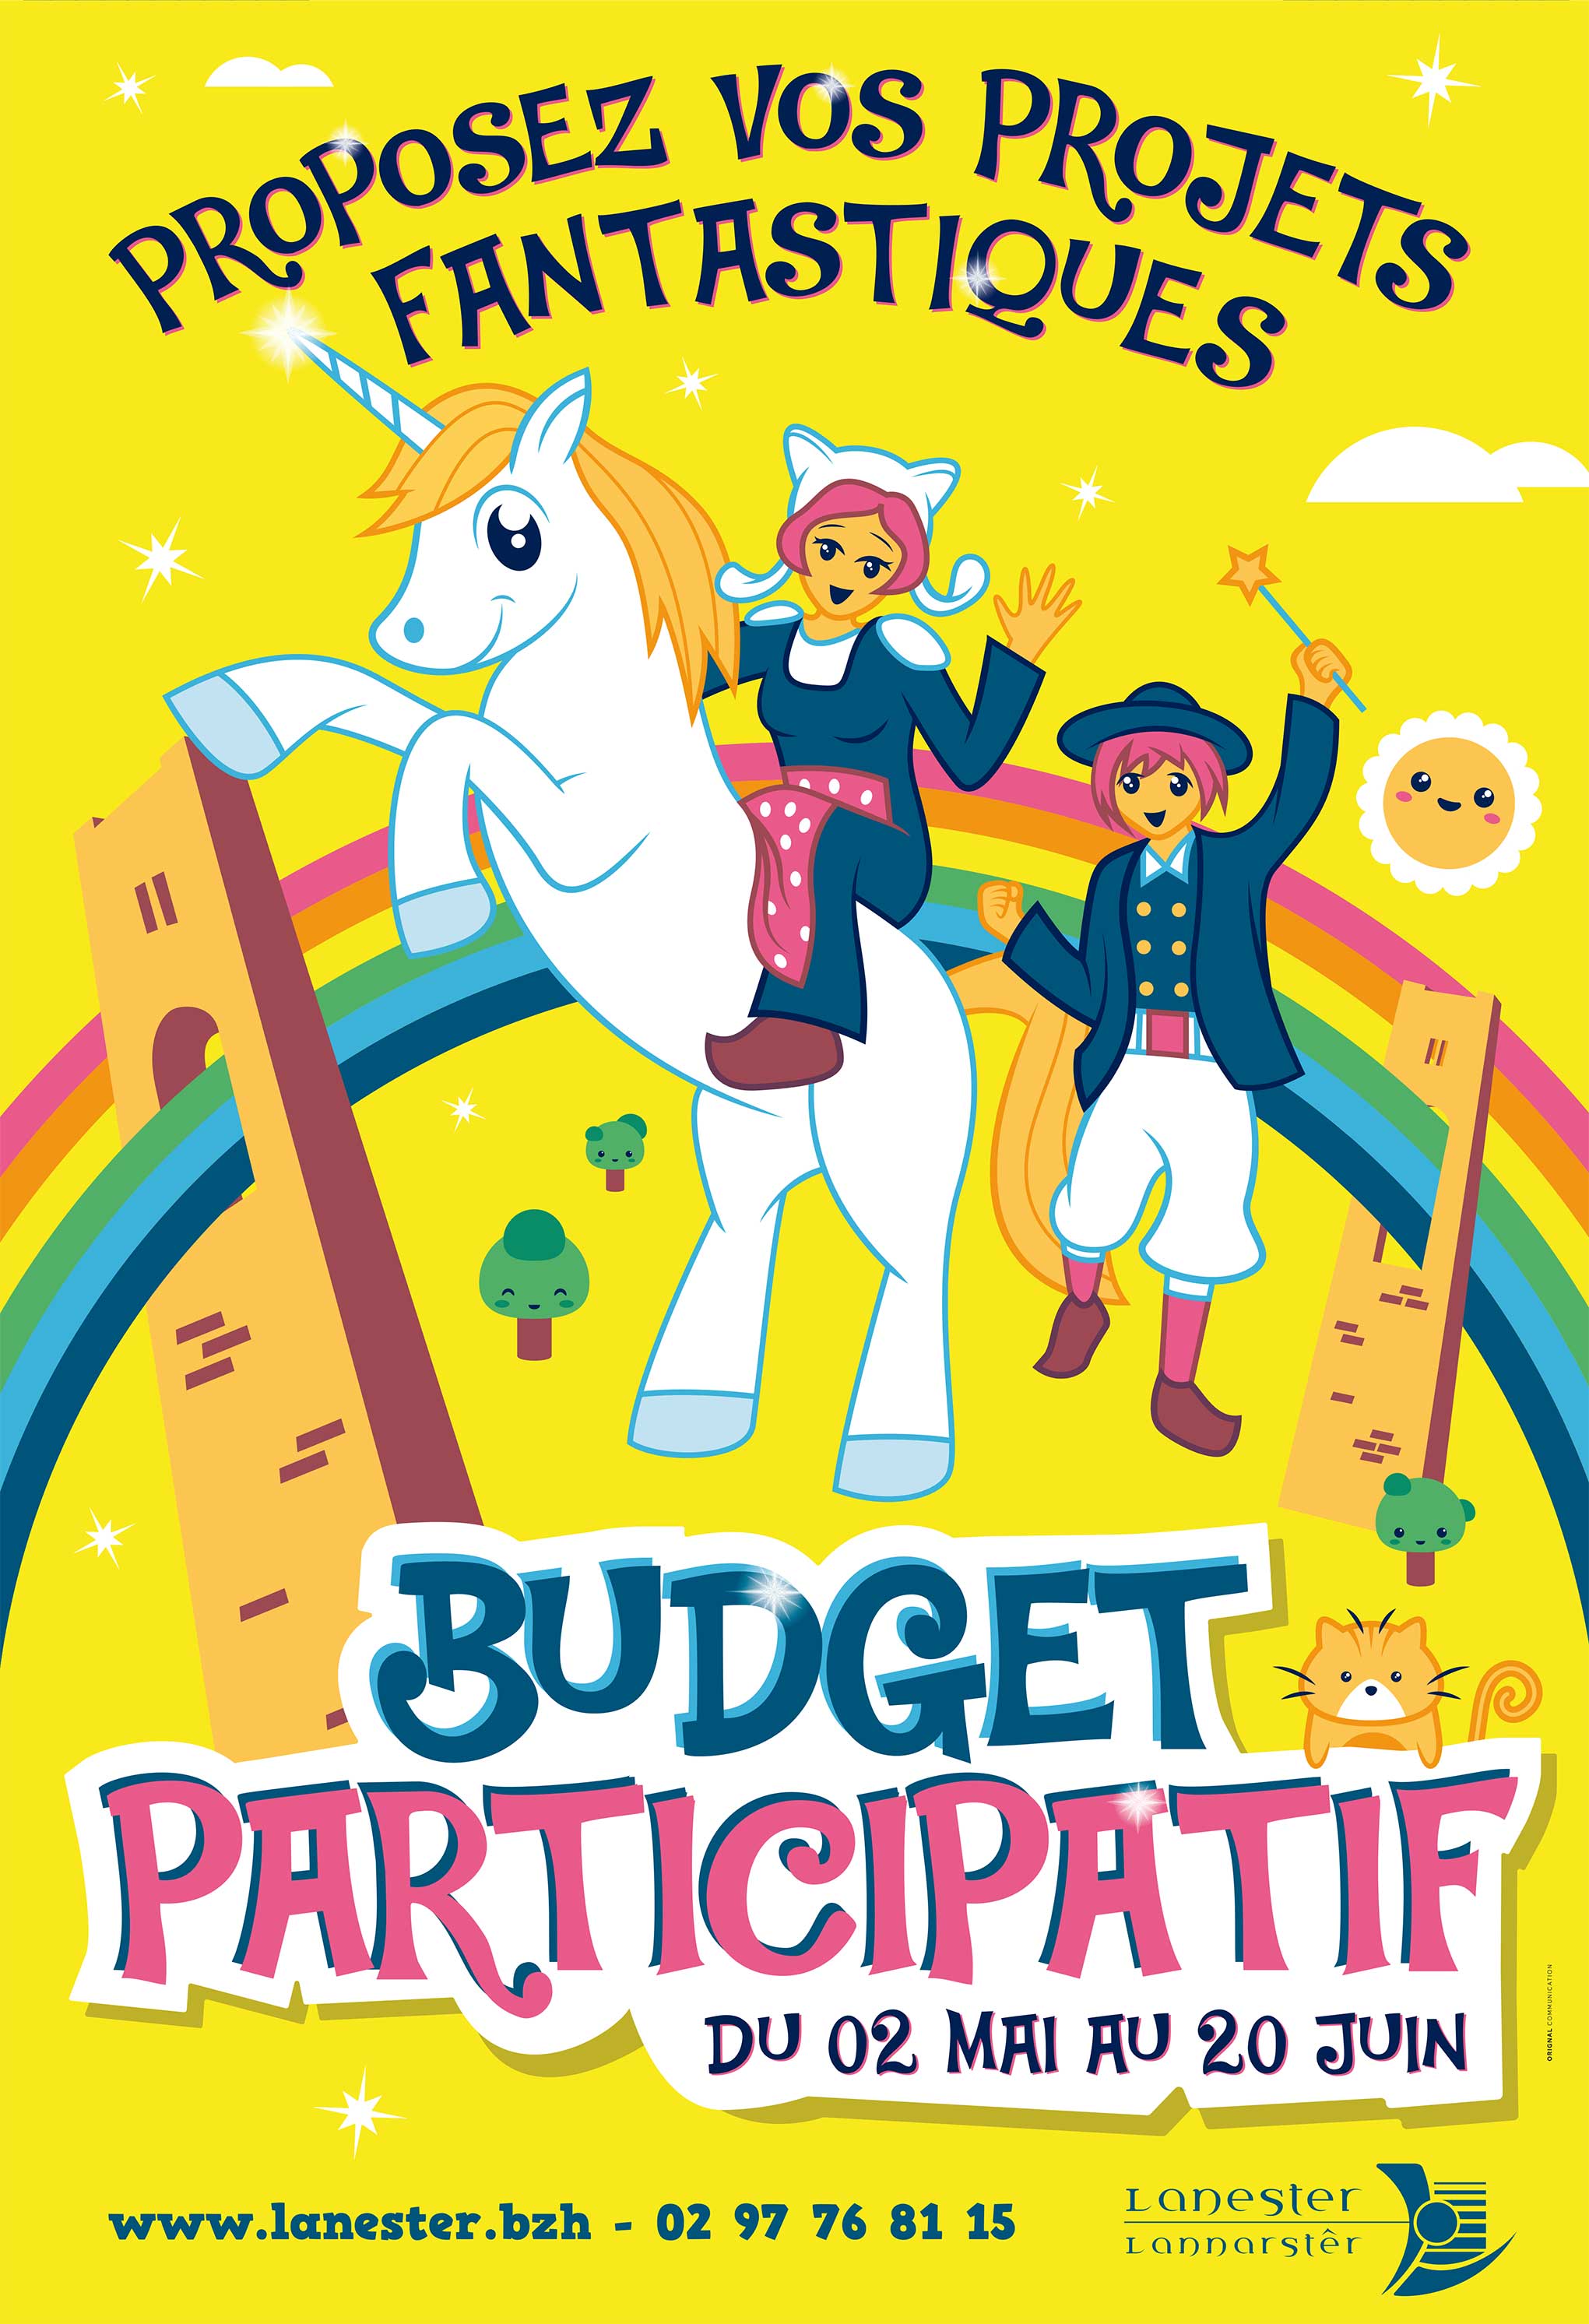 Affiche Budget participatif 2019 Lanester